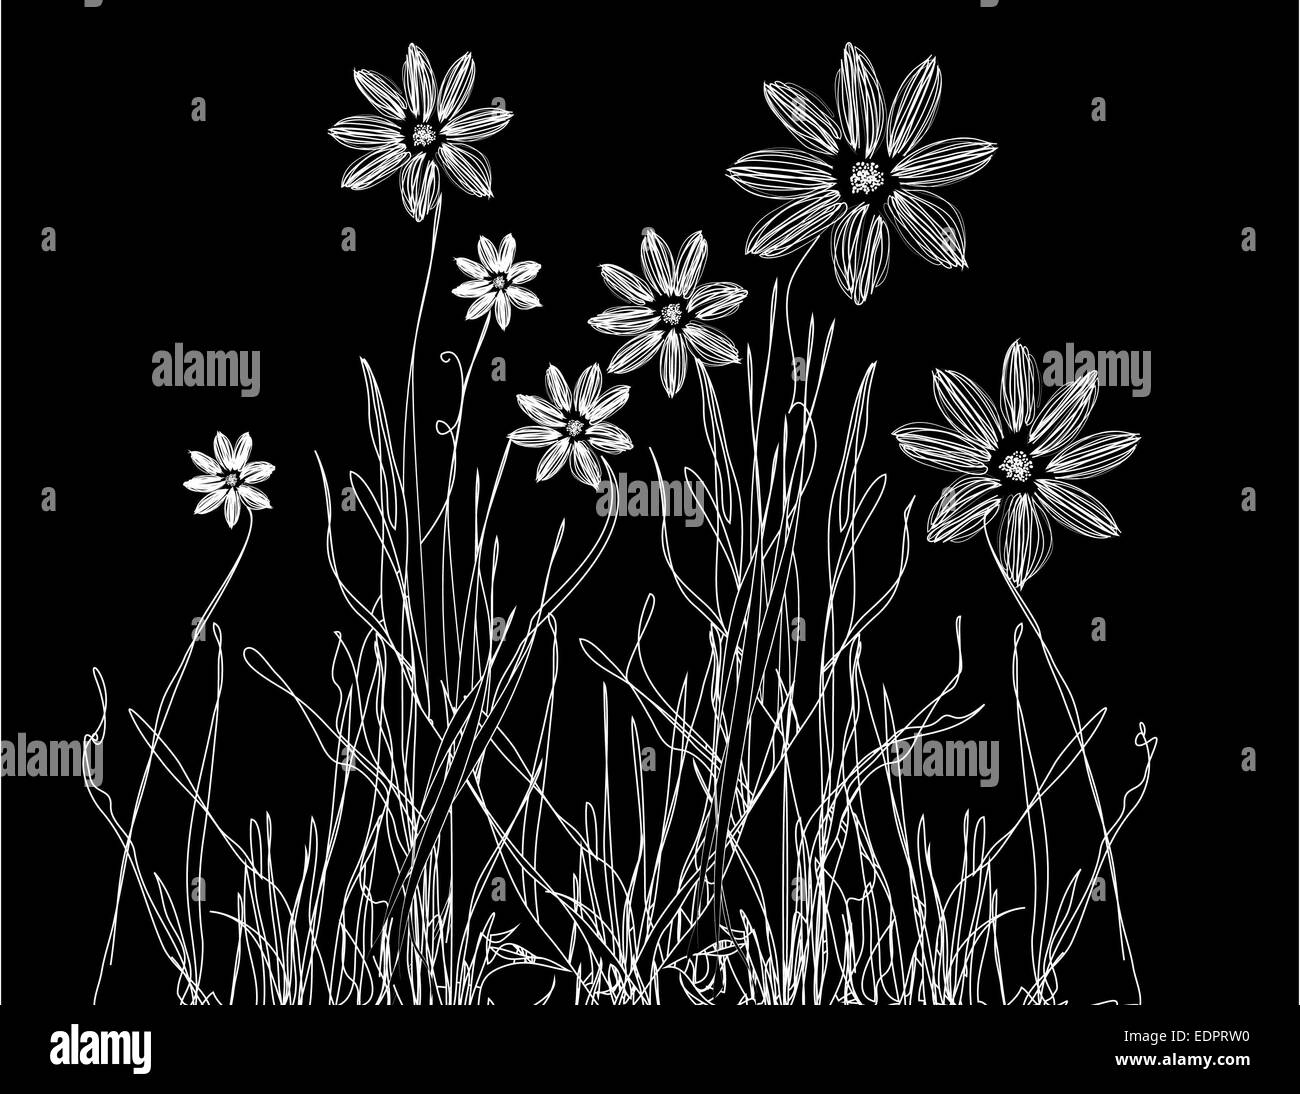 Delicato bianco & nero illustrazione sette giovani fiori selvatici che crescono su erba per decorativo o temi romantica Foto Stock